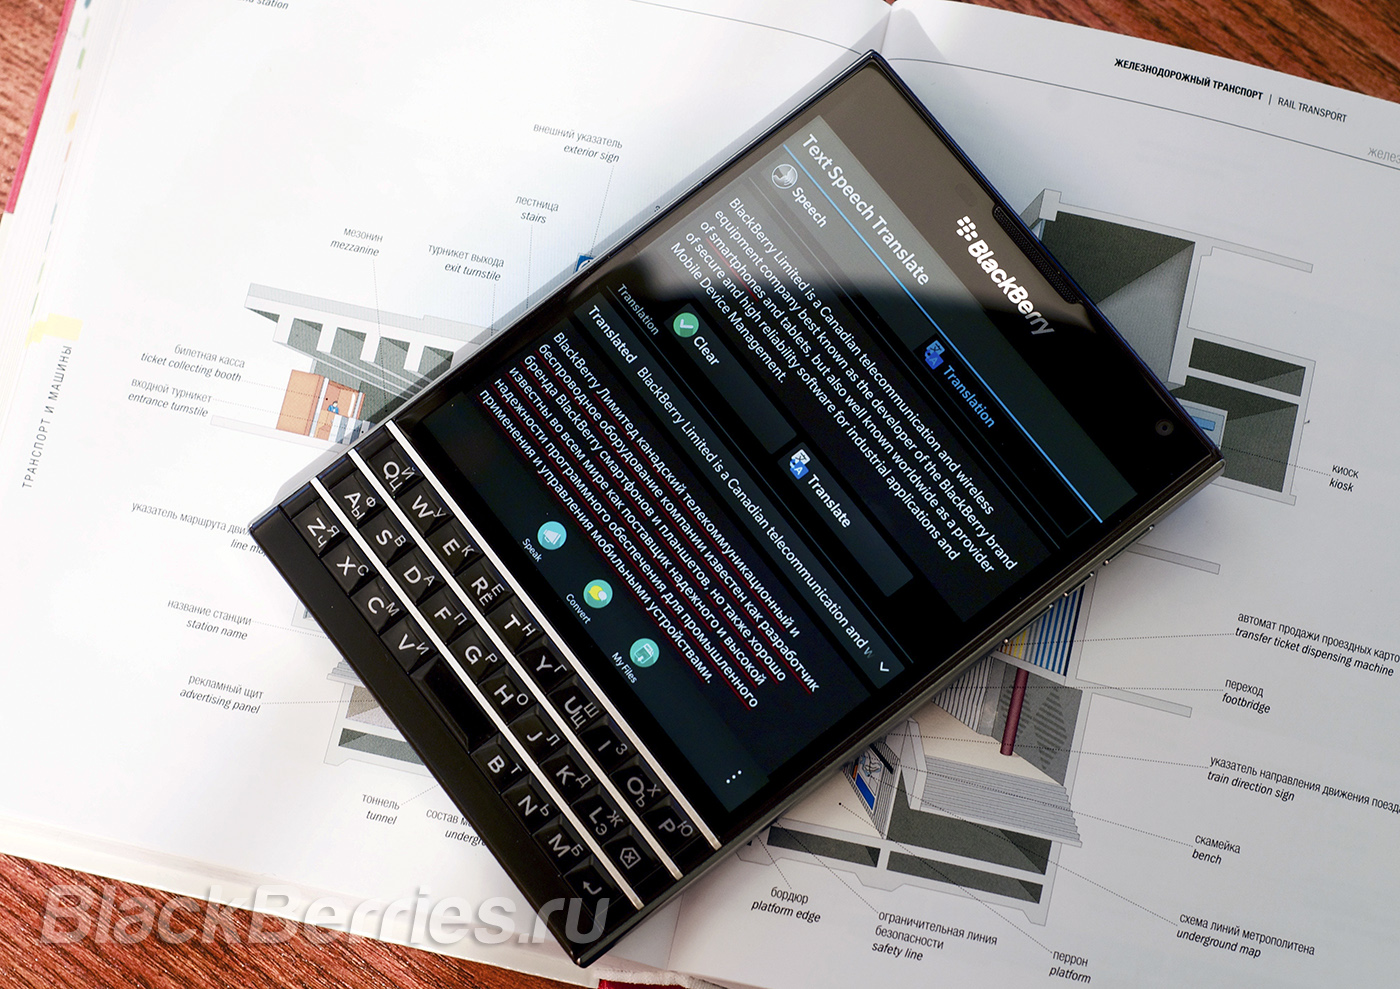 BlackBerry-Passport-Apps-09